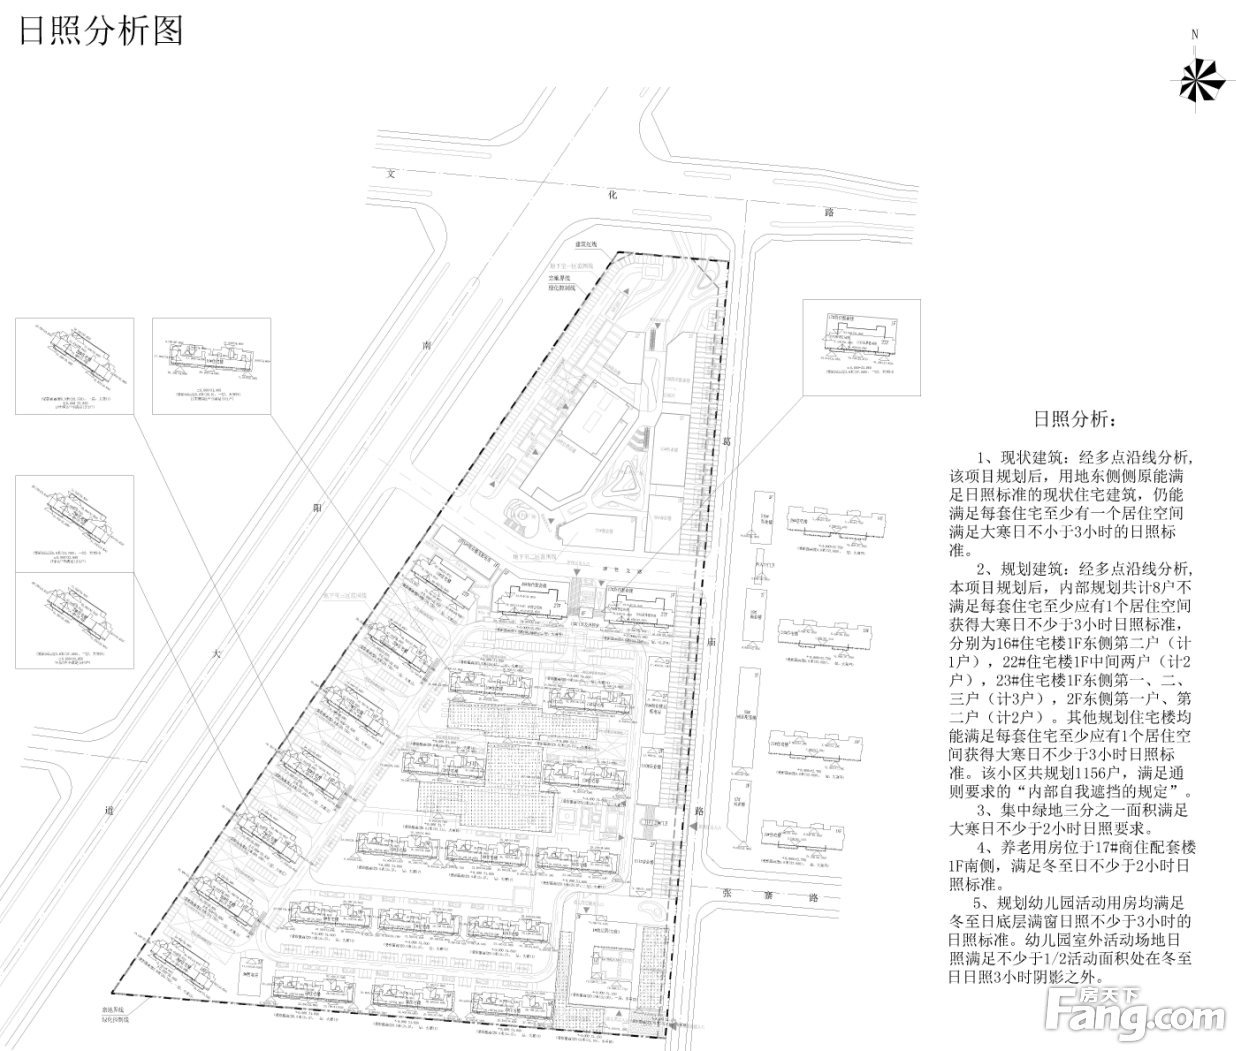 关于阜阳市荣信房地产开发有限公司的“荣信香樟庭院项目”规划方案的公示